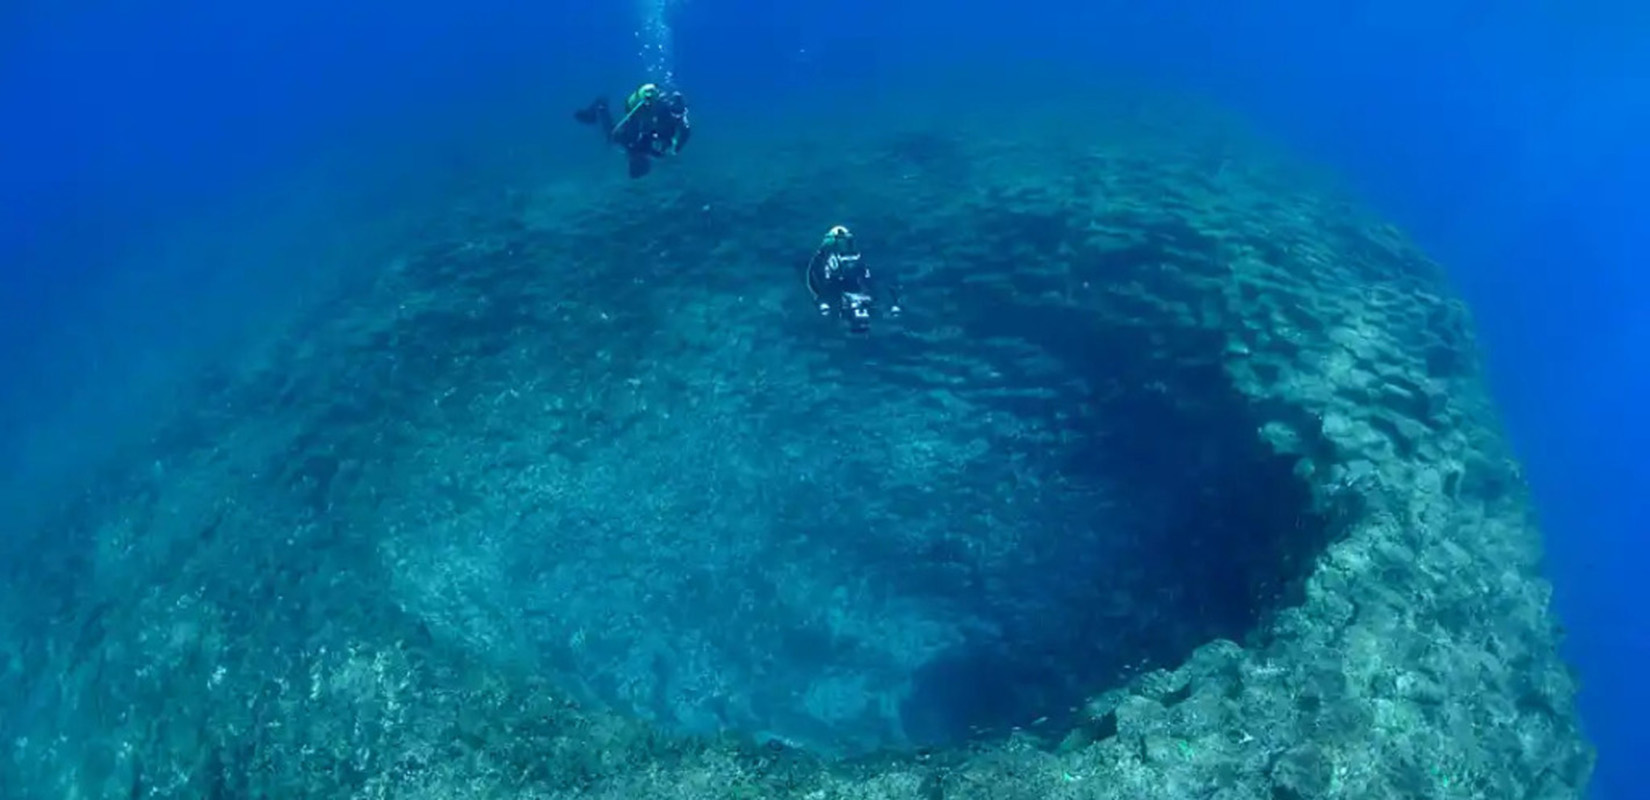 Las abuelas de Canarias montañas submarinas del atlantico en 2014